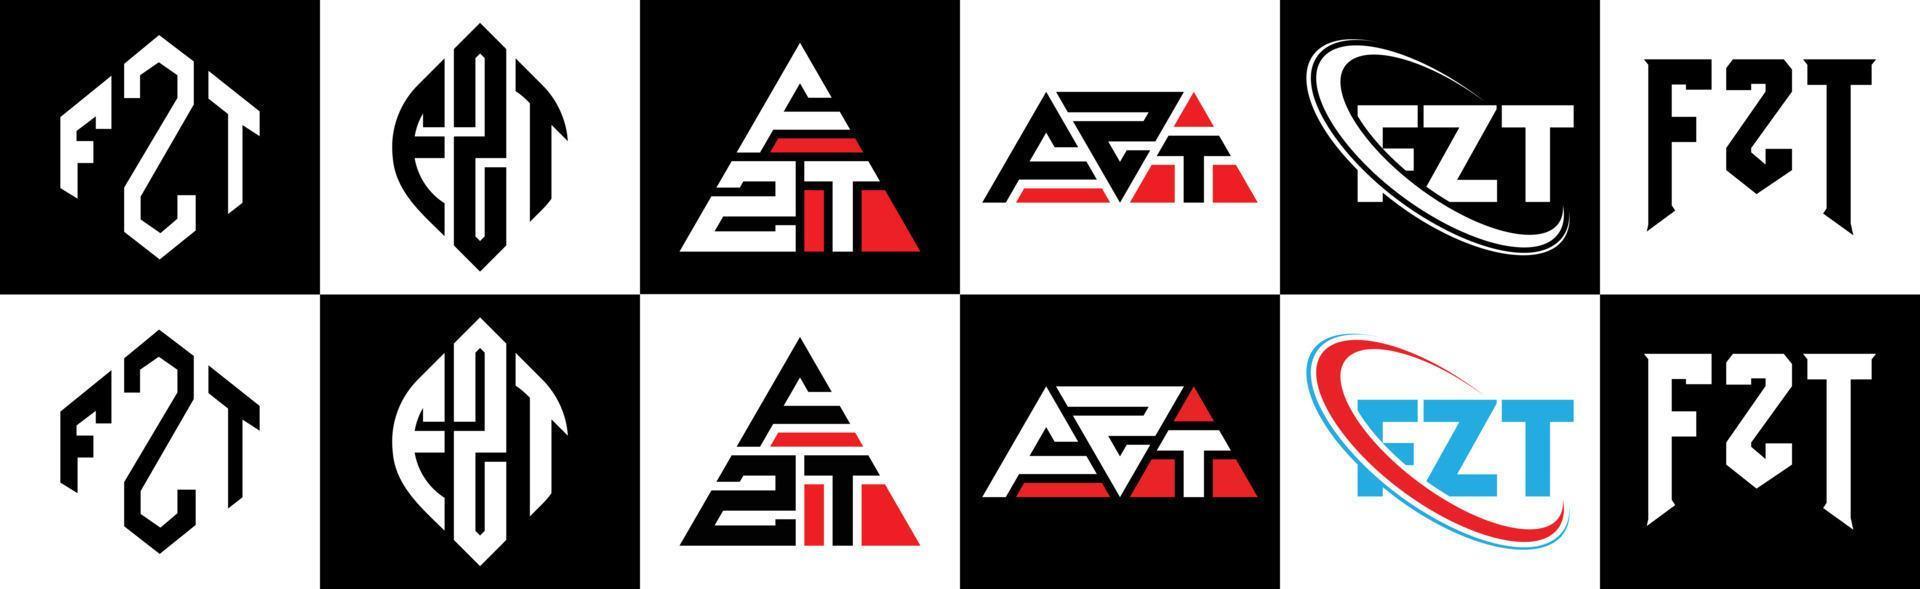 fzt-Buchstaben-Logo-Design in sechs Stilen. fzt Polygon, Kreis, Dreieck, Sechseck, flacher und einfacher Stil mit schwarz-weißem Buchstabenlogo in einer Zeichenfläche. fzt minimalistisches und klassisches Logo vektor